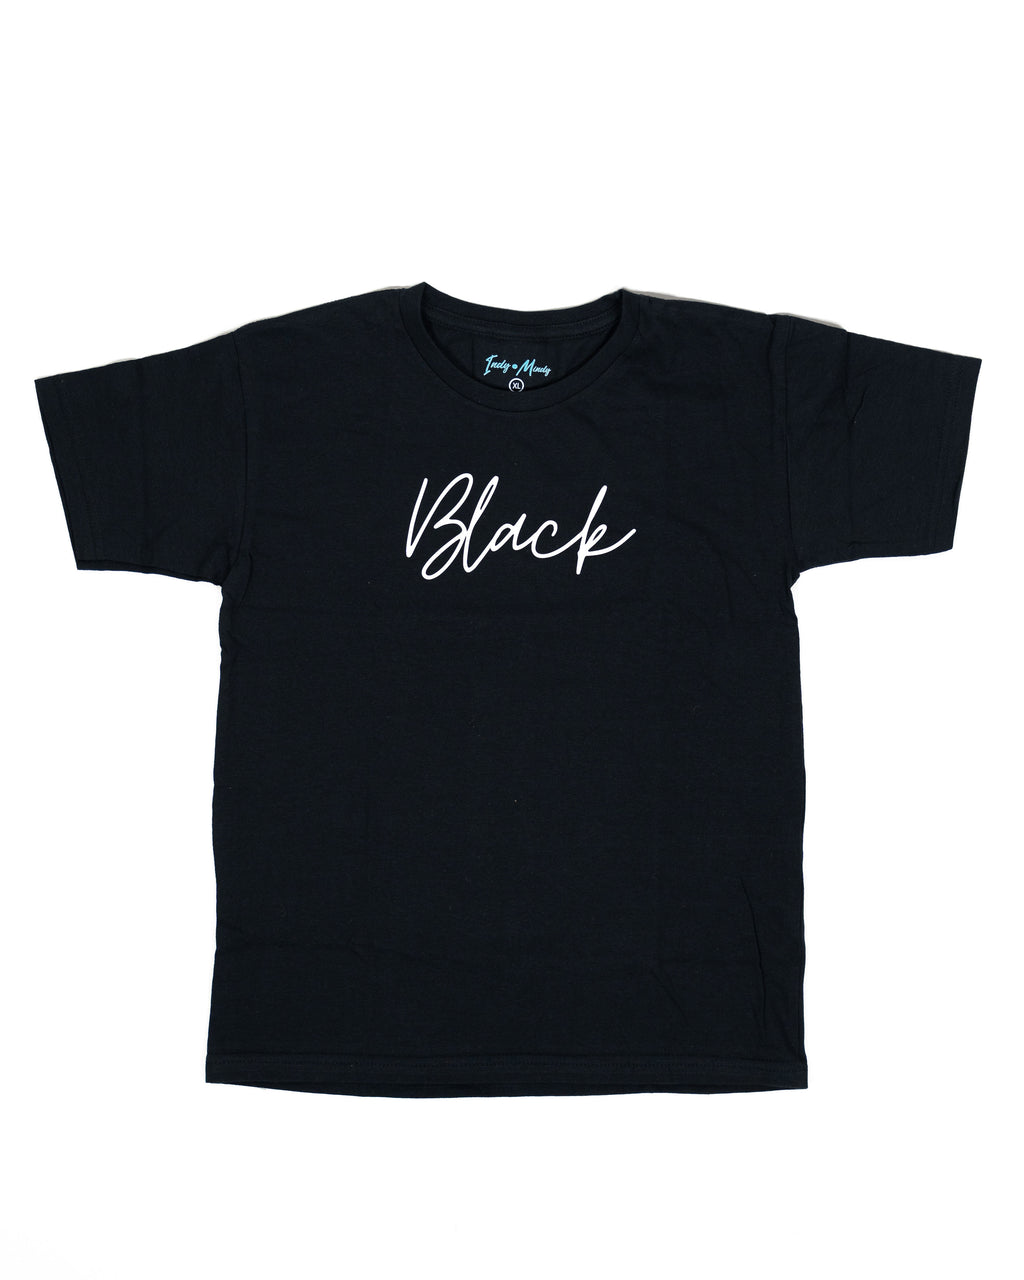 Black T shirt for kids